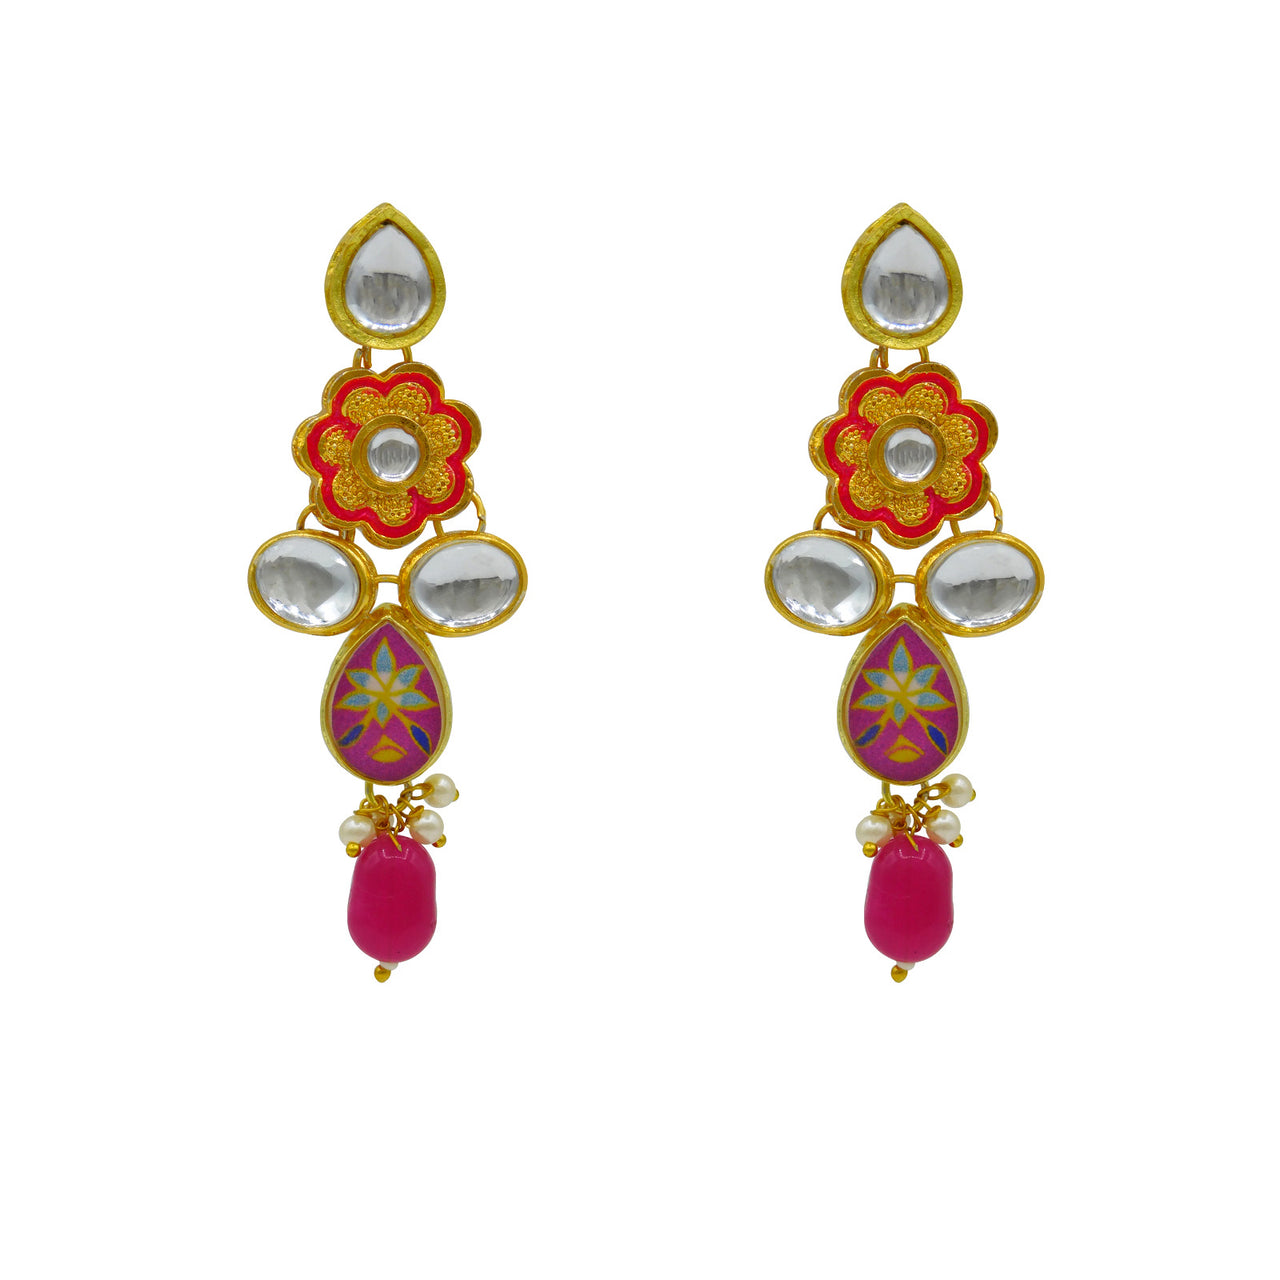 Sujwel Gold Plated Kundan Floral Design Choker Necklace Set (08-0482)